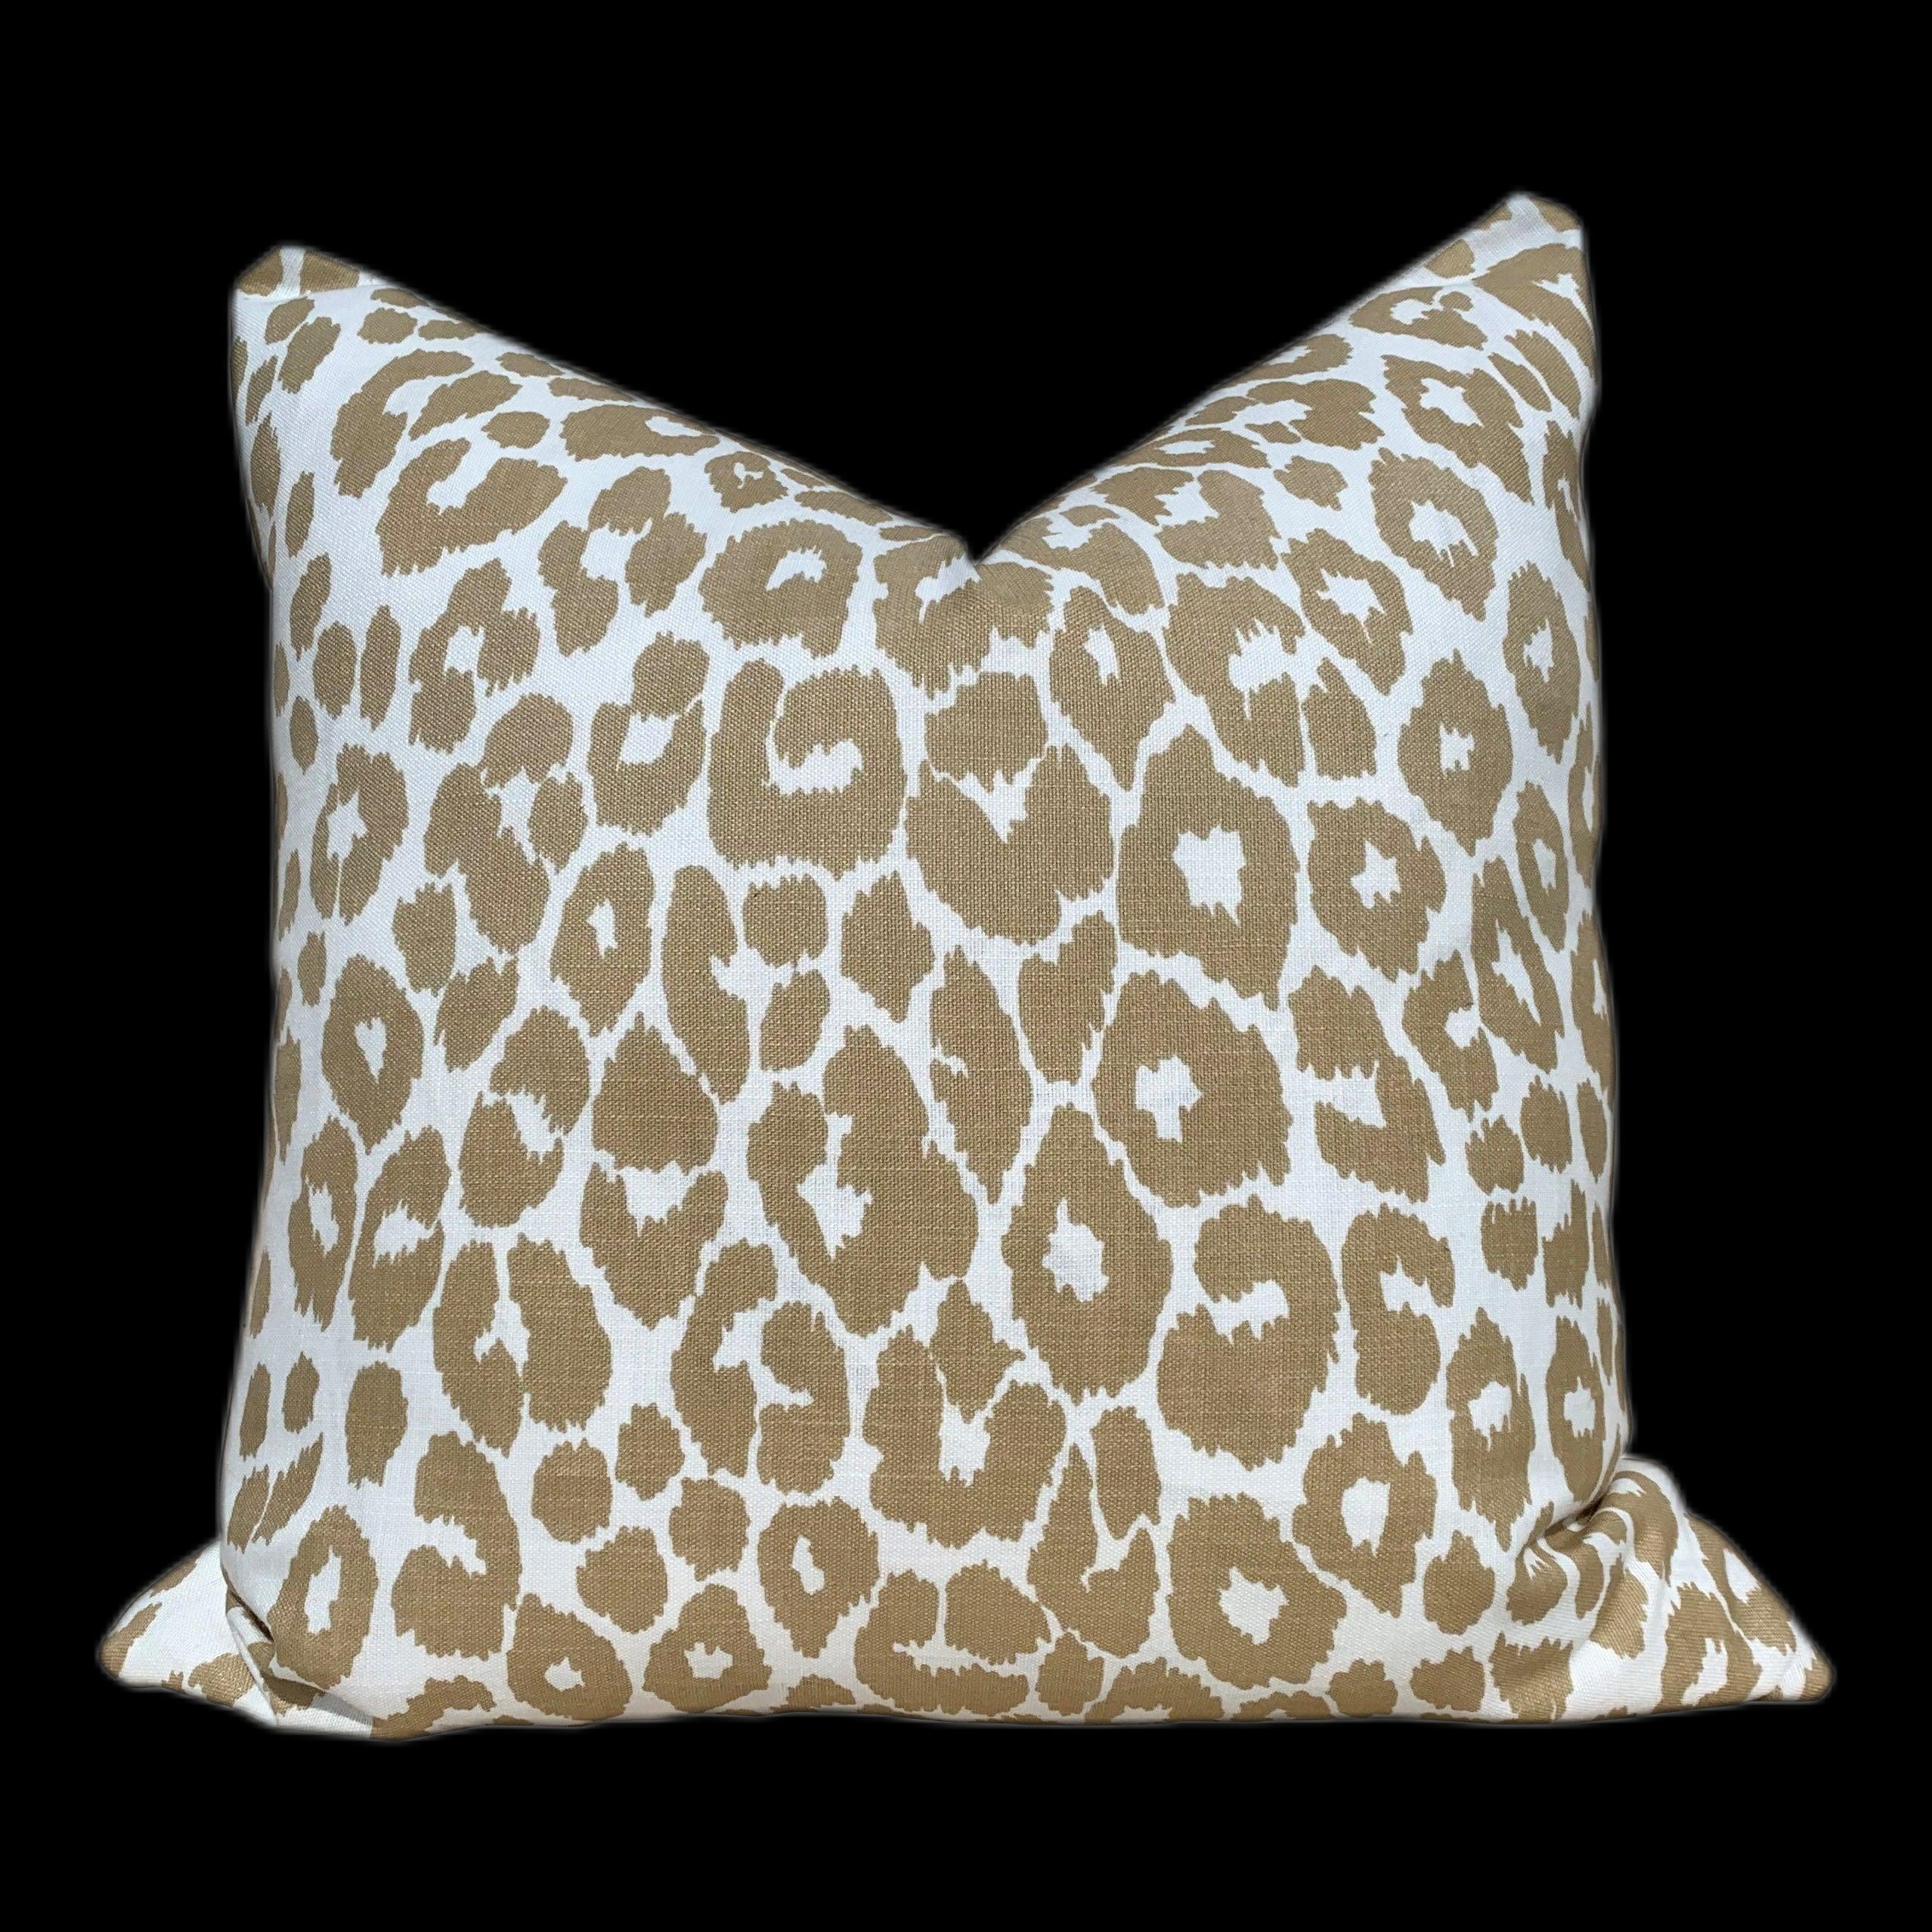 Indoor/Outdoor Schumacher Leopard Pillow in Tan. Animal Print Outdoor lumbar Pillow in Beige.